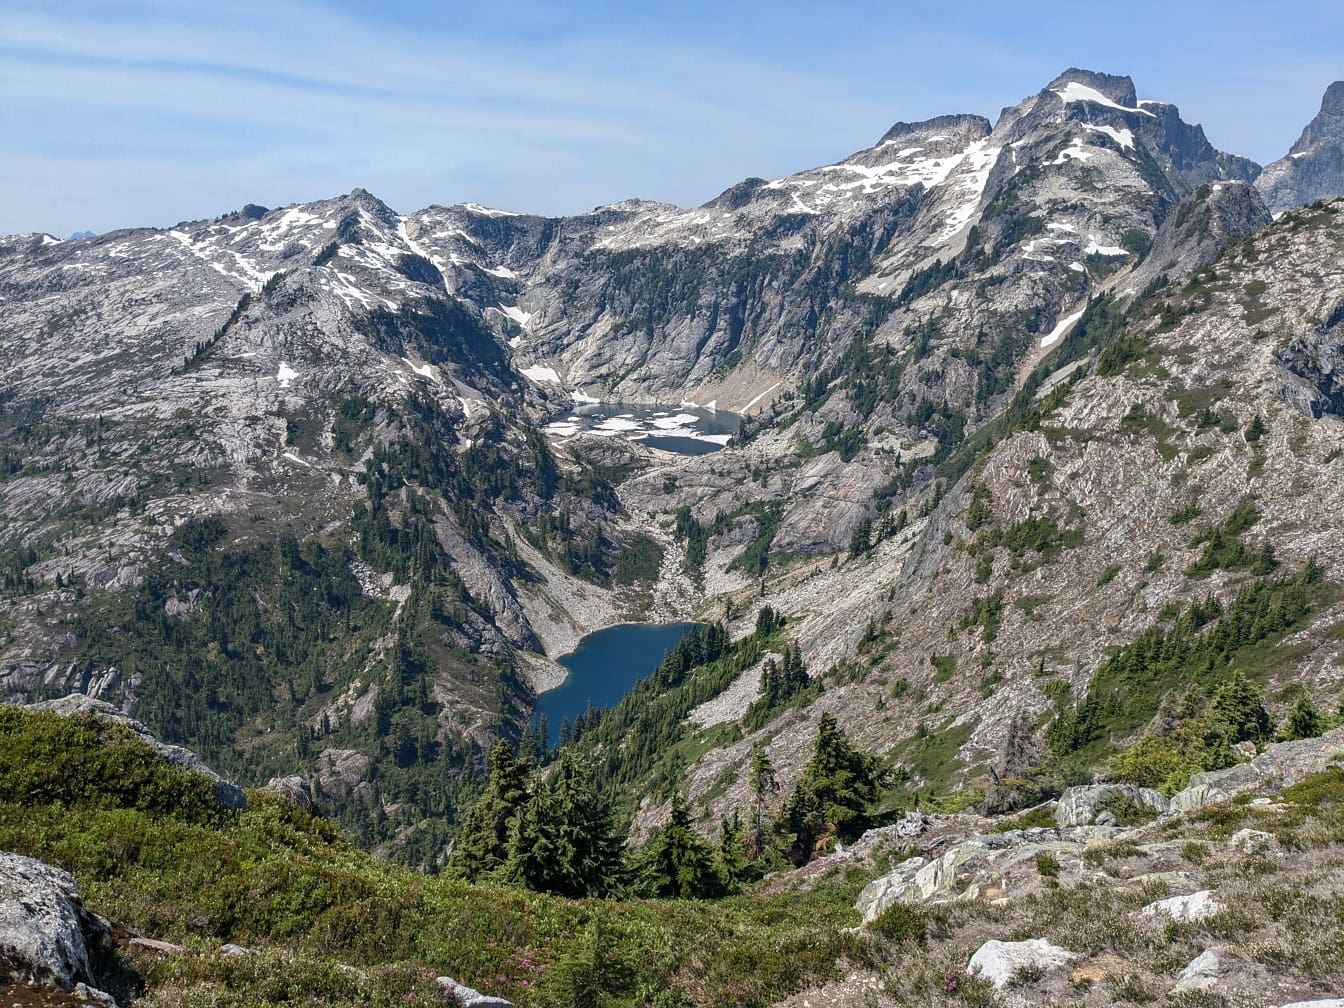 Phong cảnh của những ngọn núi với một hồ Thornton ở giữa trong công viên quốc gia North Cascades ở Washington